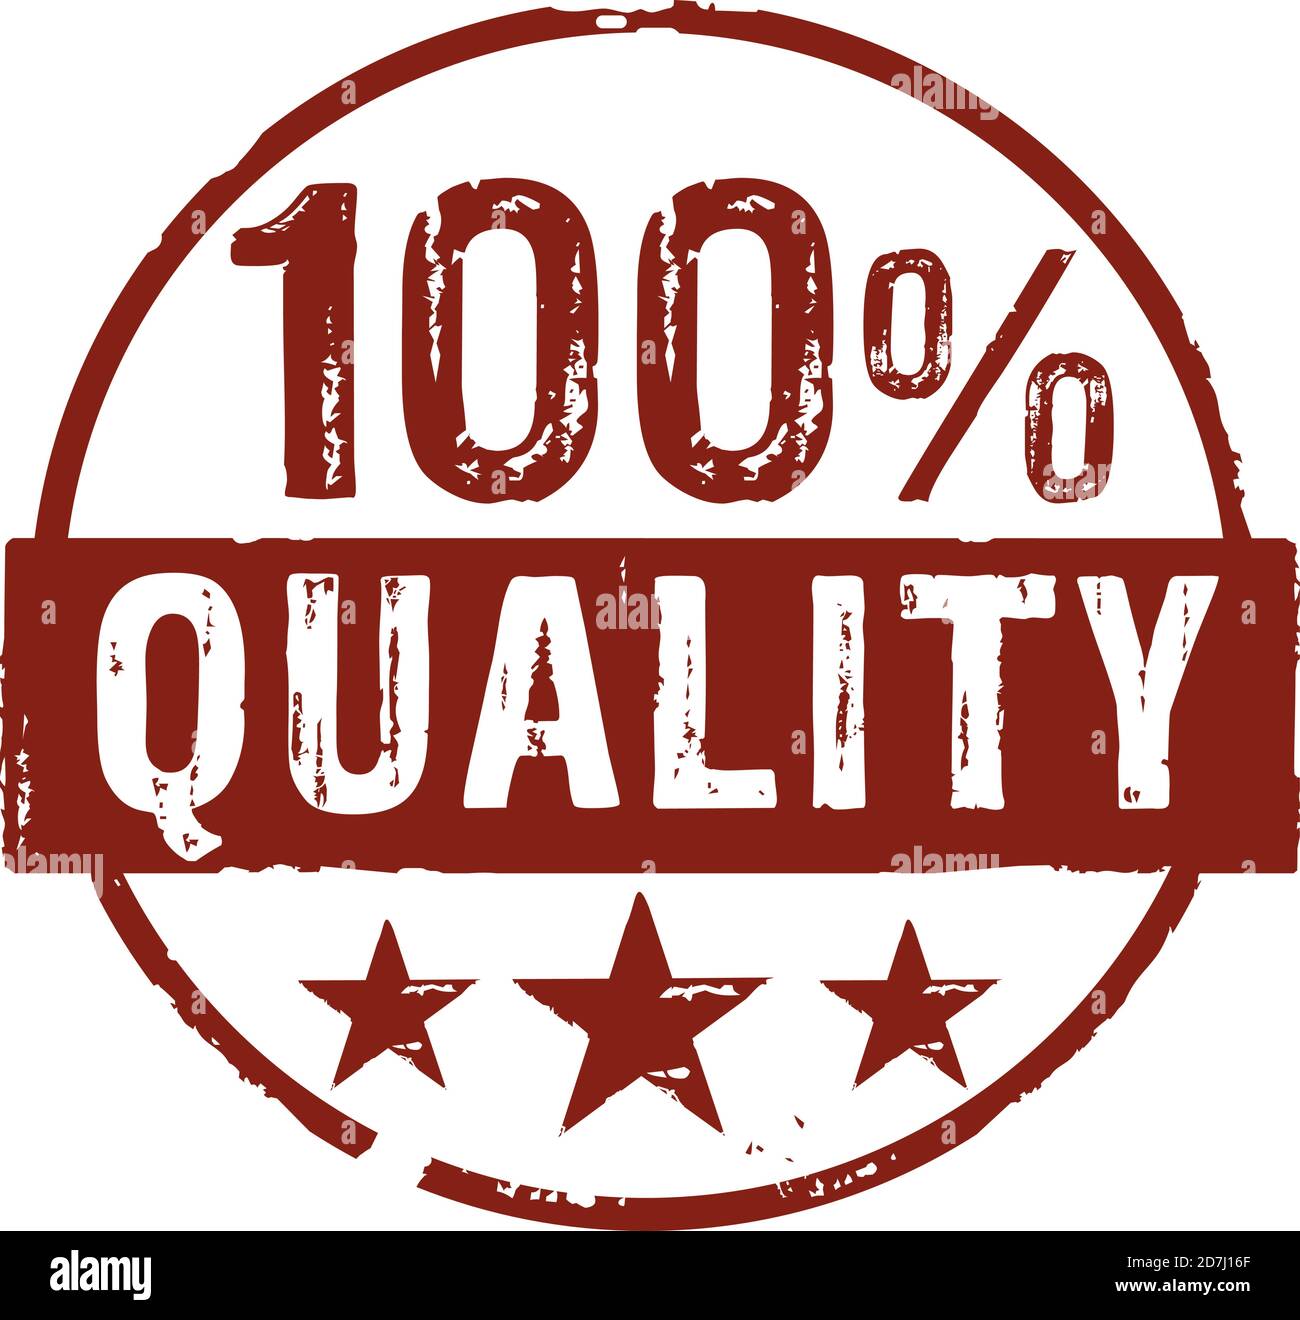 Qualität 100 Prozent Grunge Stempel Vektor-Symbol. Beste Art, Geschäft, Marke, Marke und hochwertige Konzept Illustration. Stock Vektor